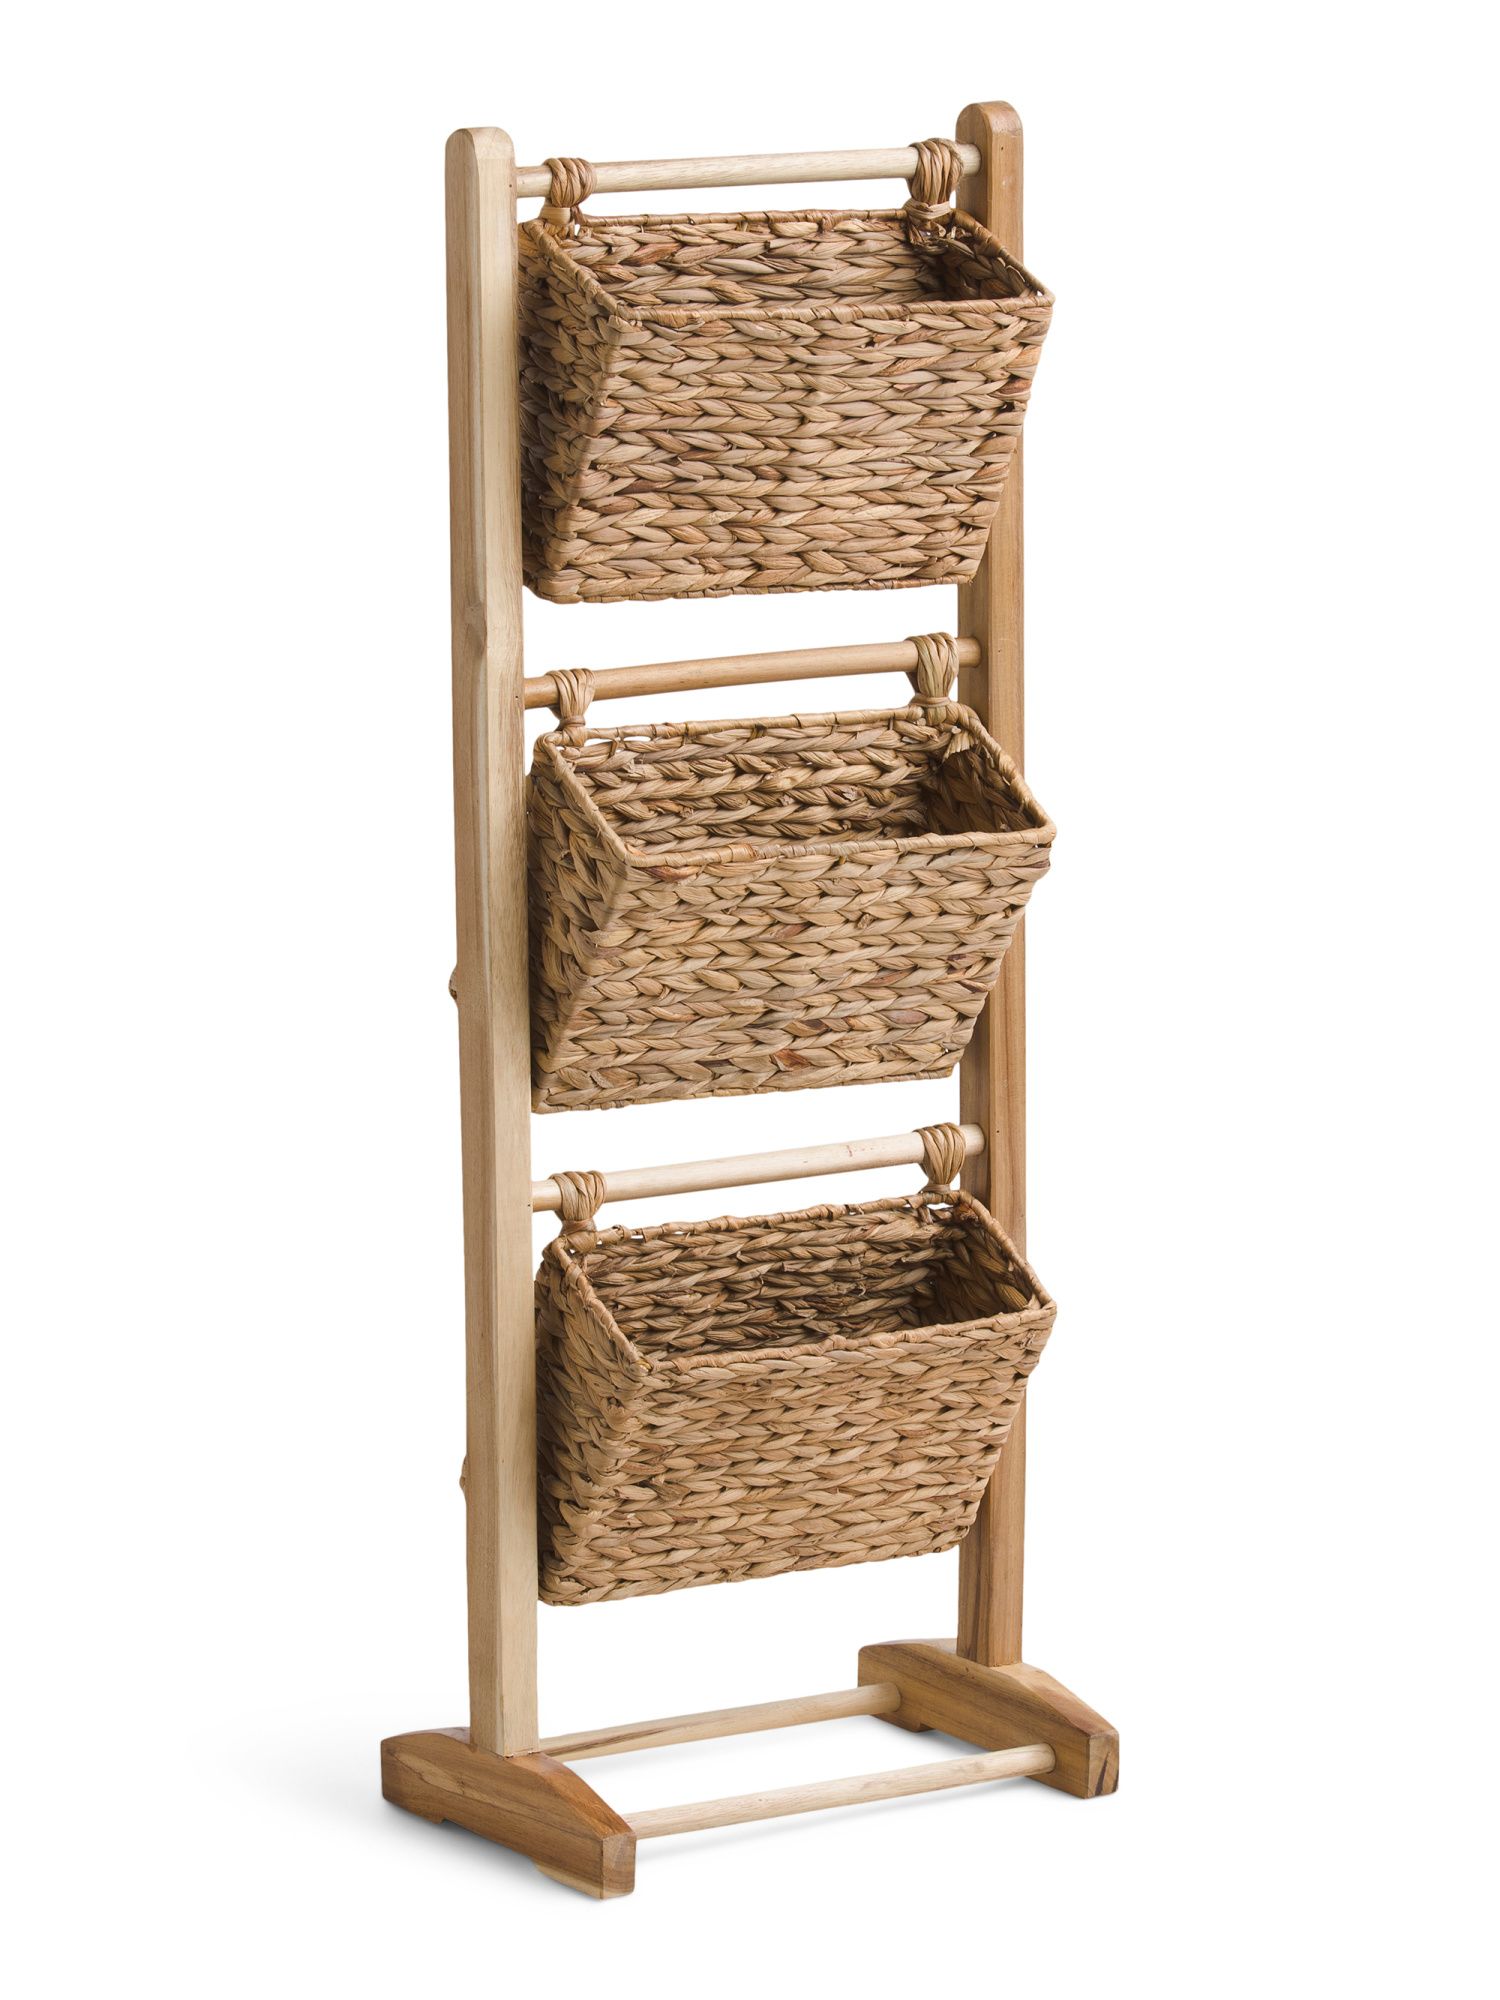 3 Tier Hyacinth Storage Ladder With Wood Frame | TJ Maxx